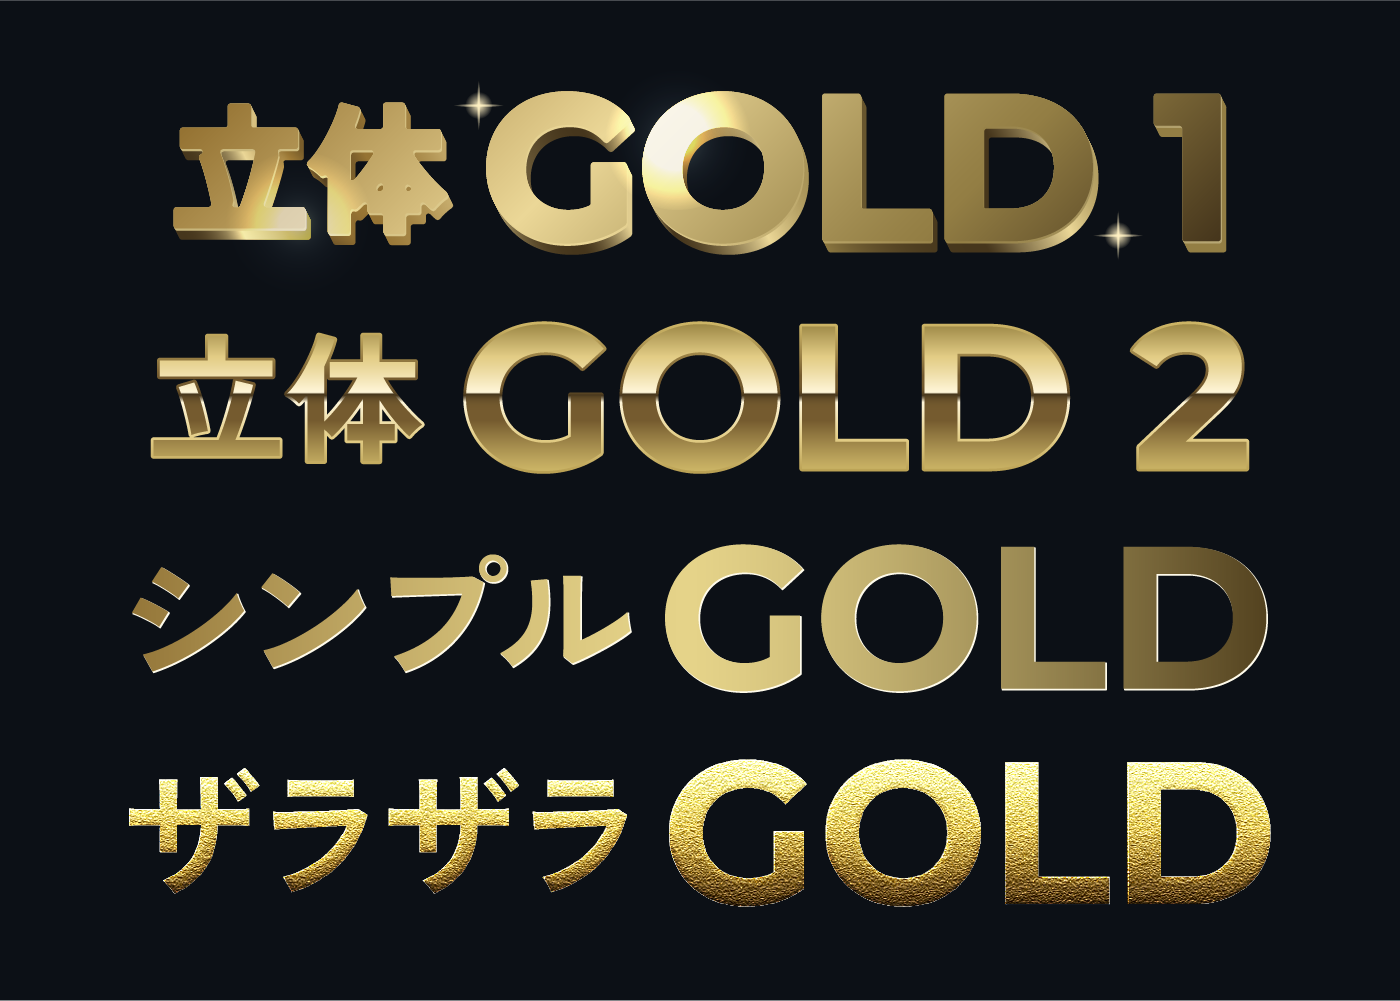 ゴールド・金色文字4種類